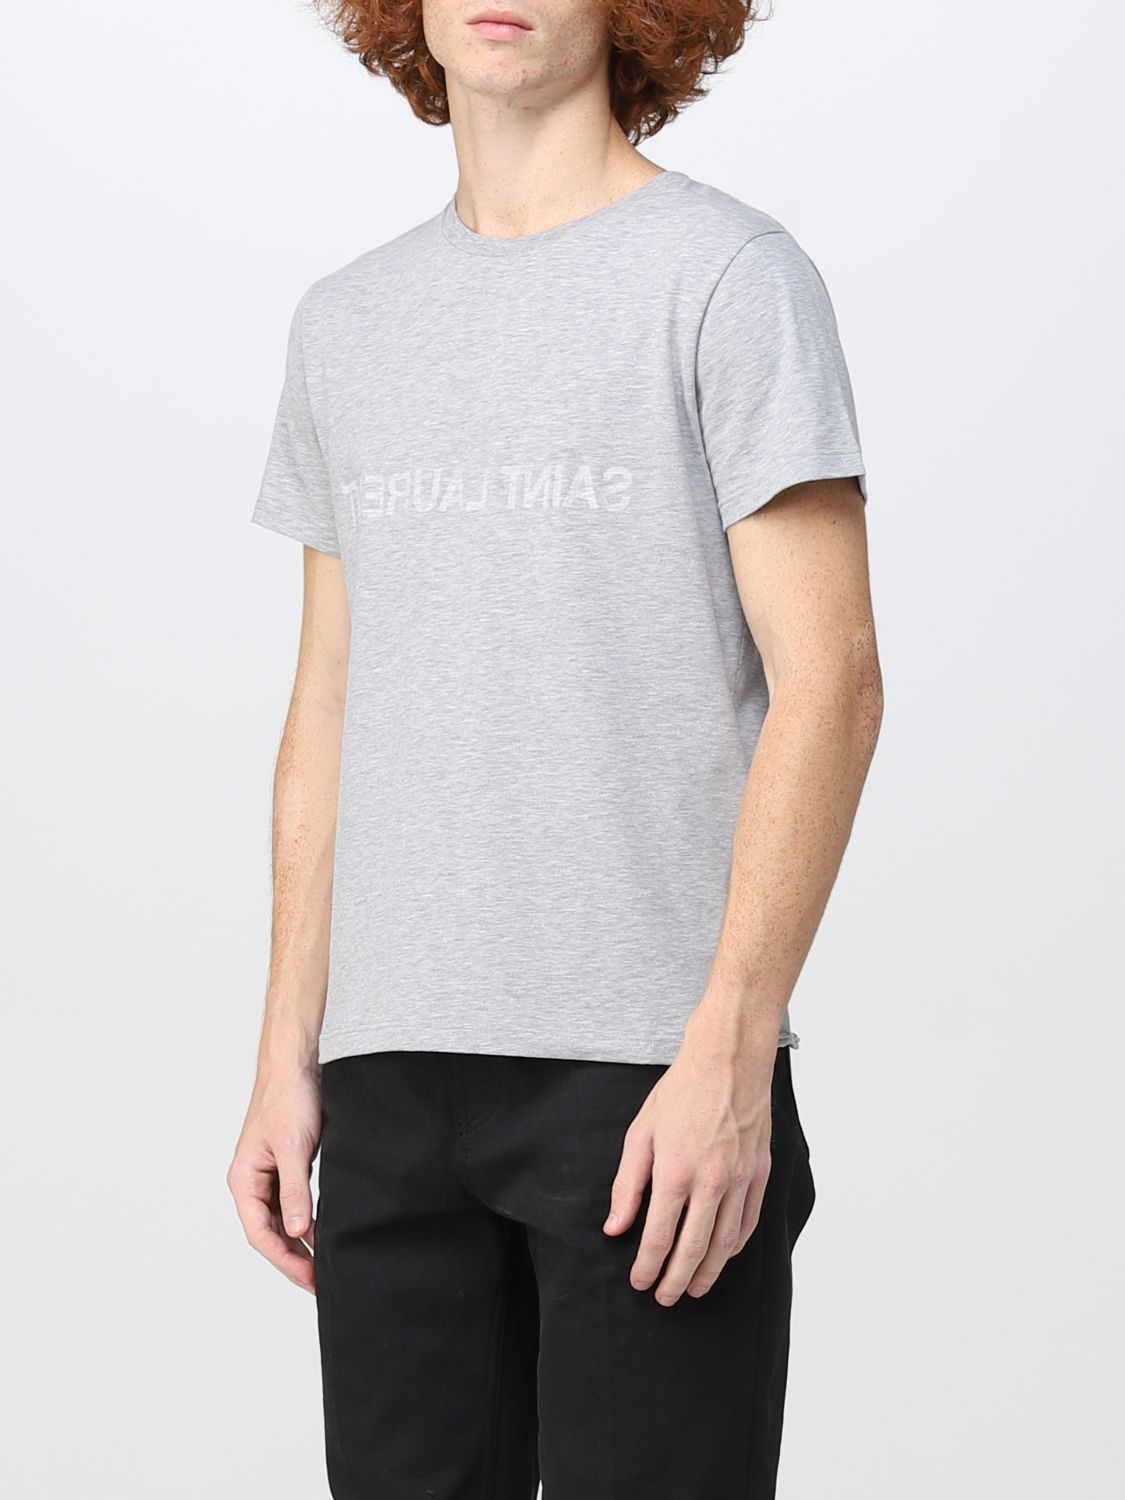 T-shirt Saint Laurent: Saint Laurent t-shirt for man grey 4